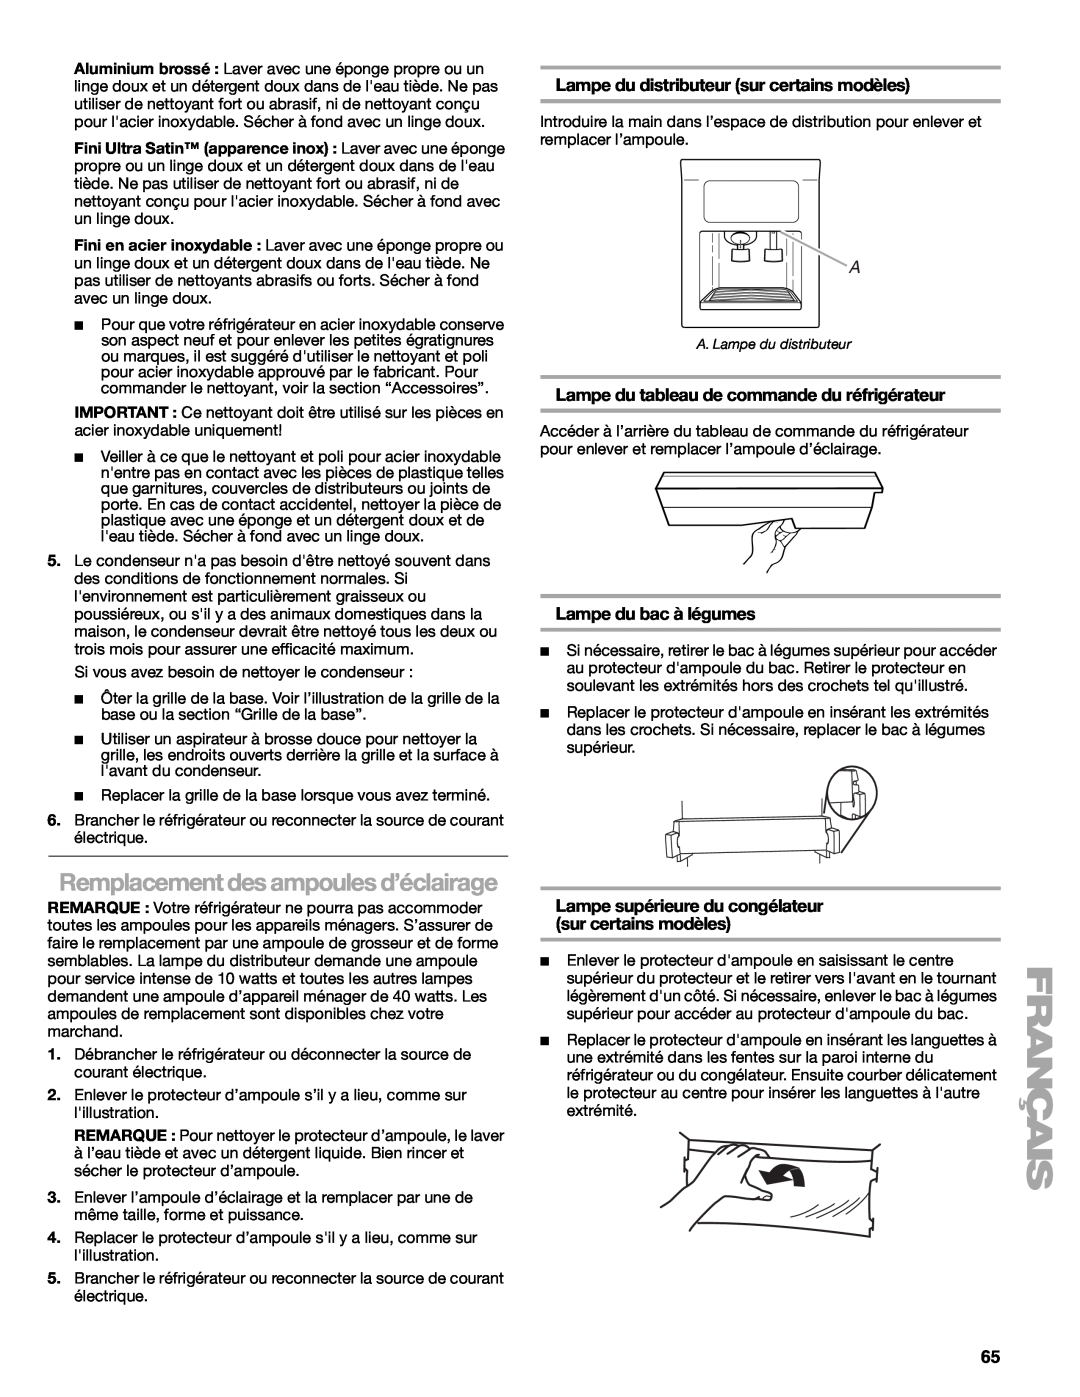 Sears T1KB2/T1RFKB2 manual Remplacement des ampoules d’éclairage, Lampe du distributeur sur certains modèles 